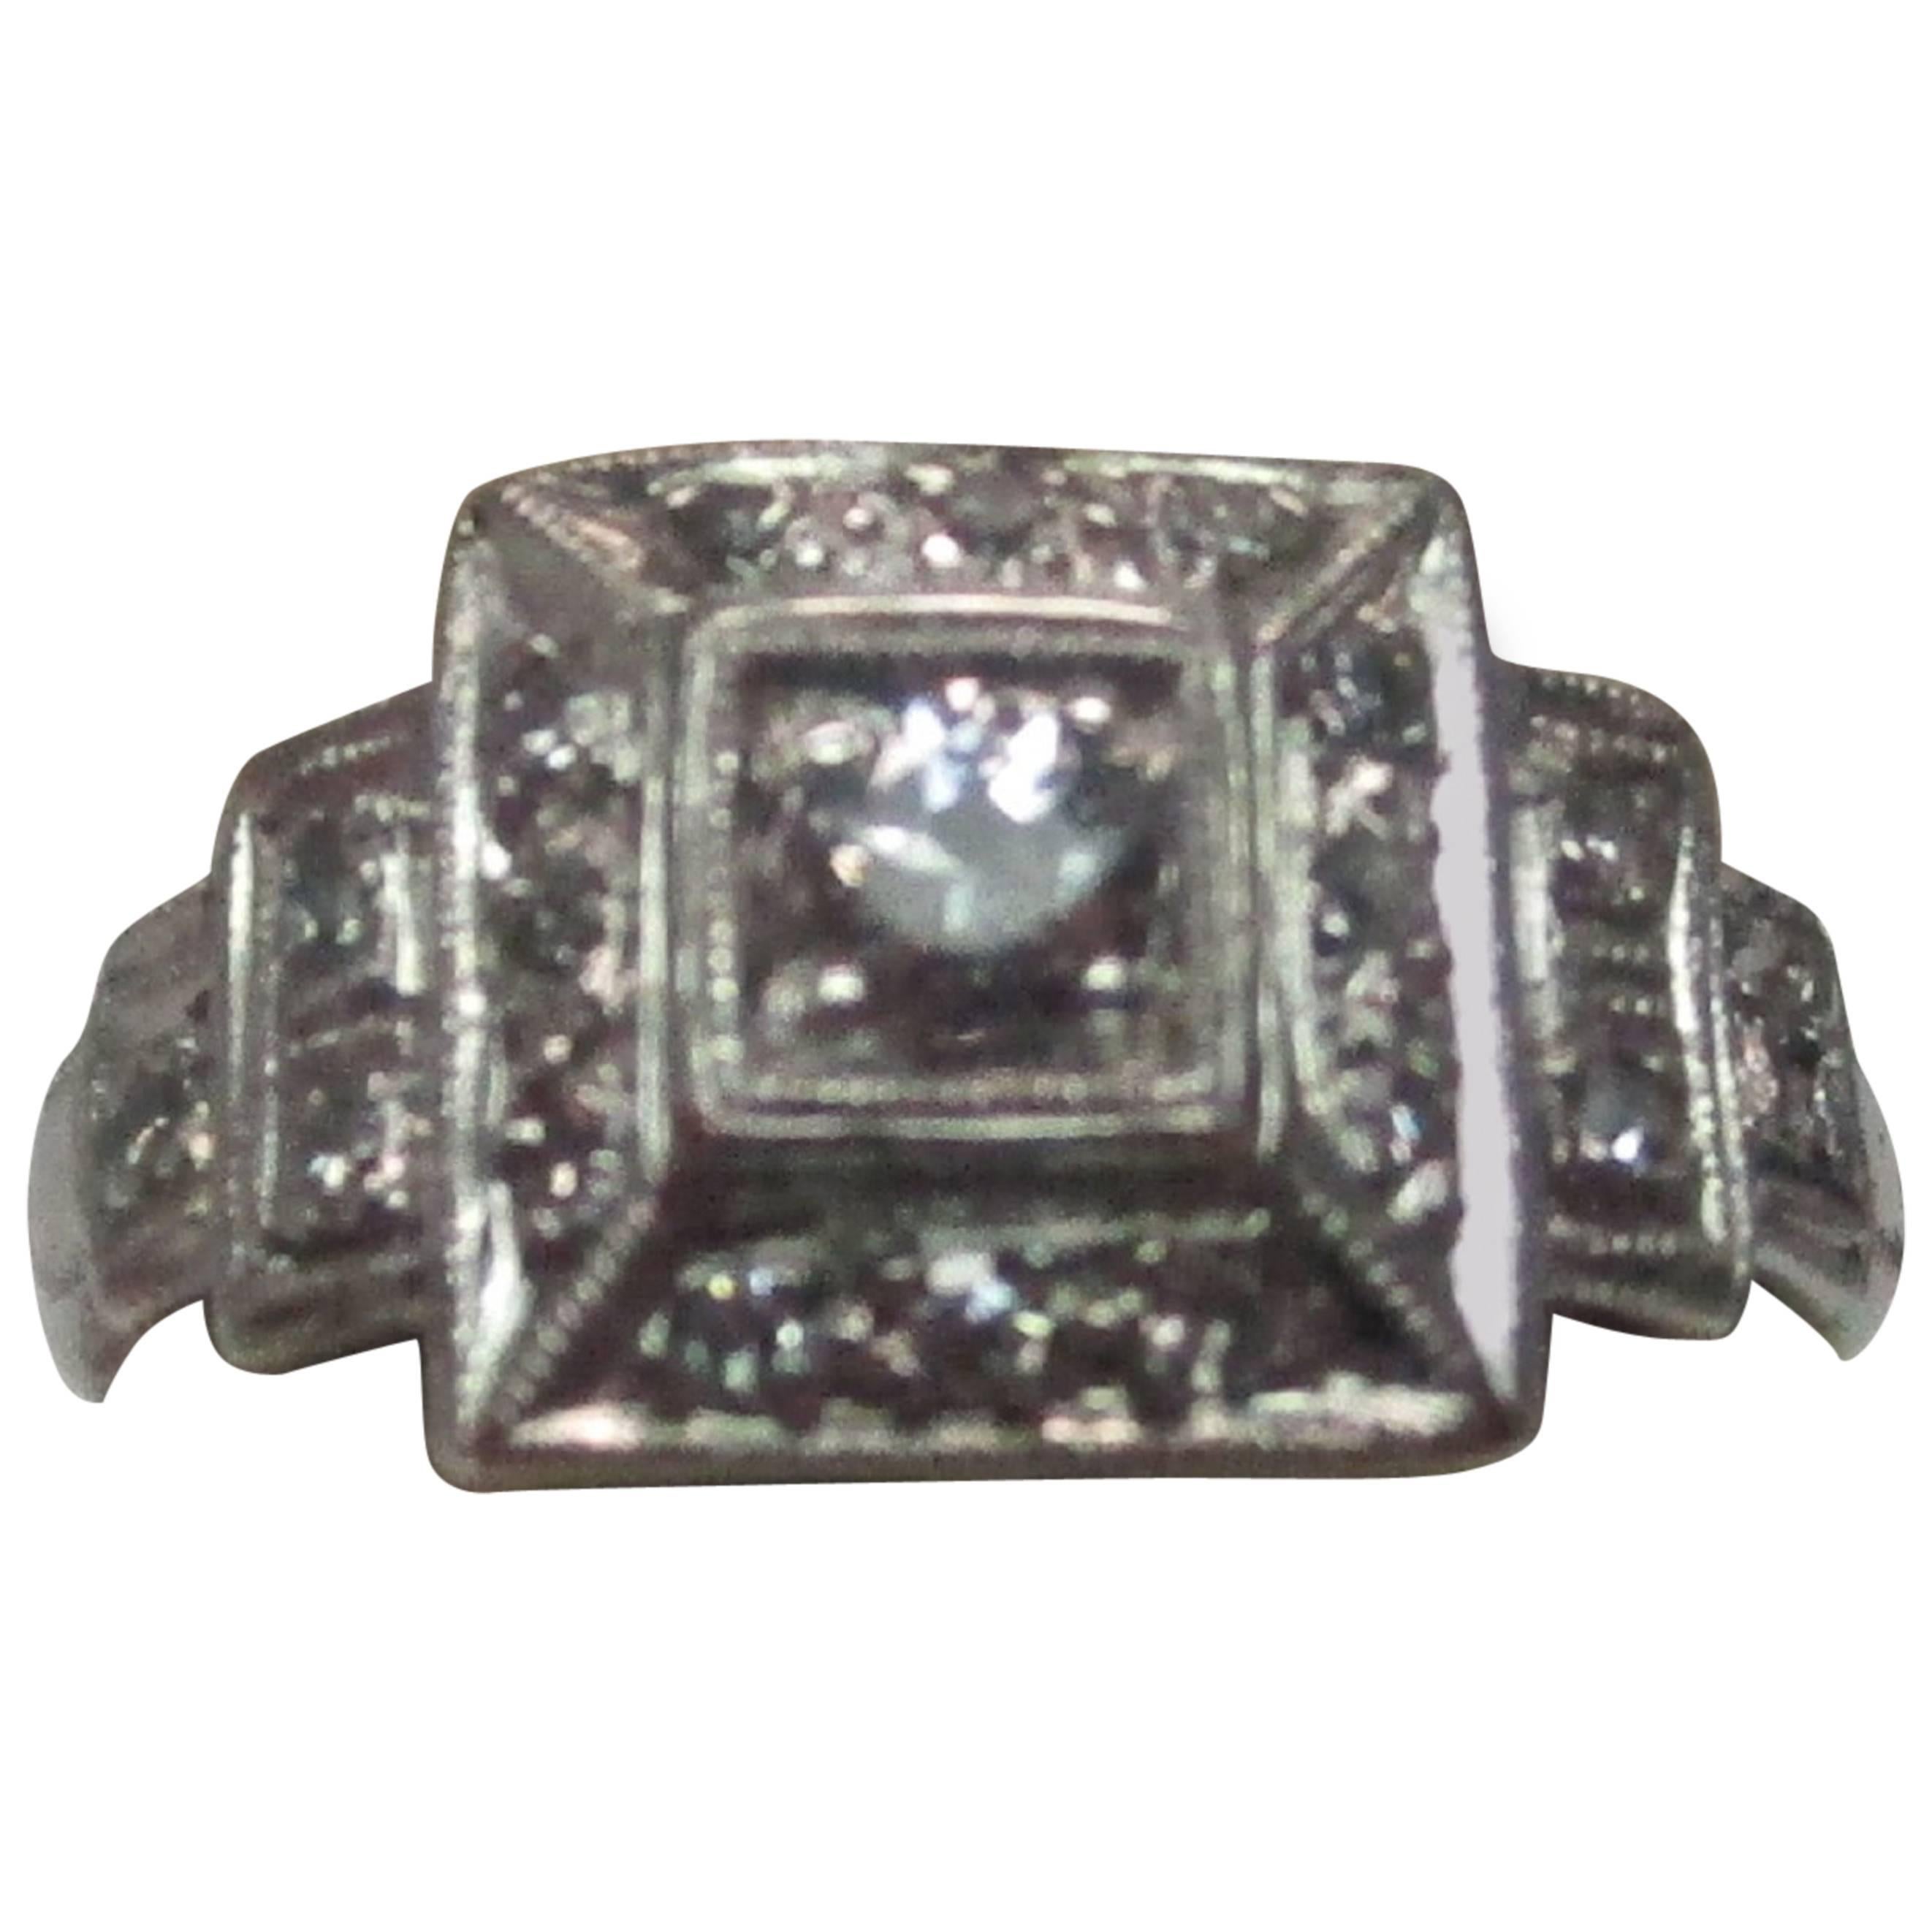 Platinum Diamond Art Deco Engagement Ring